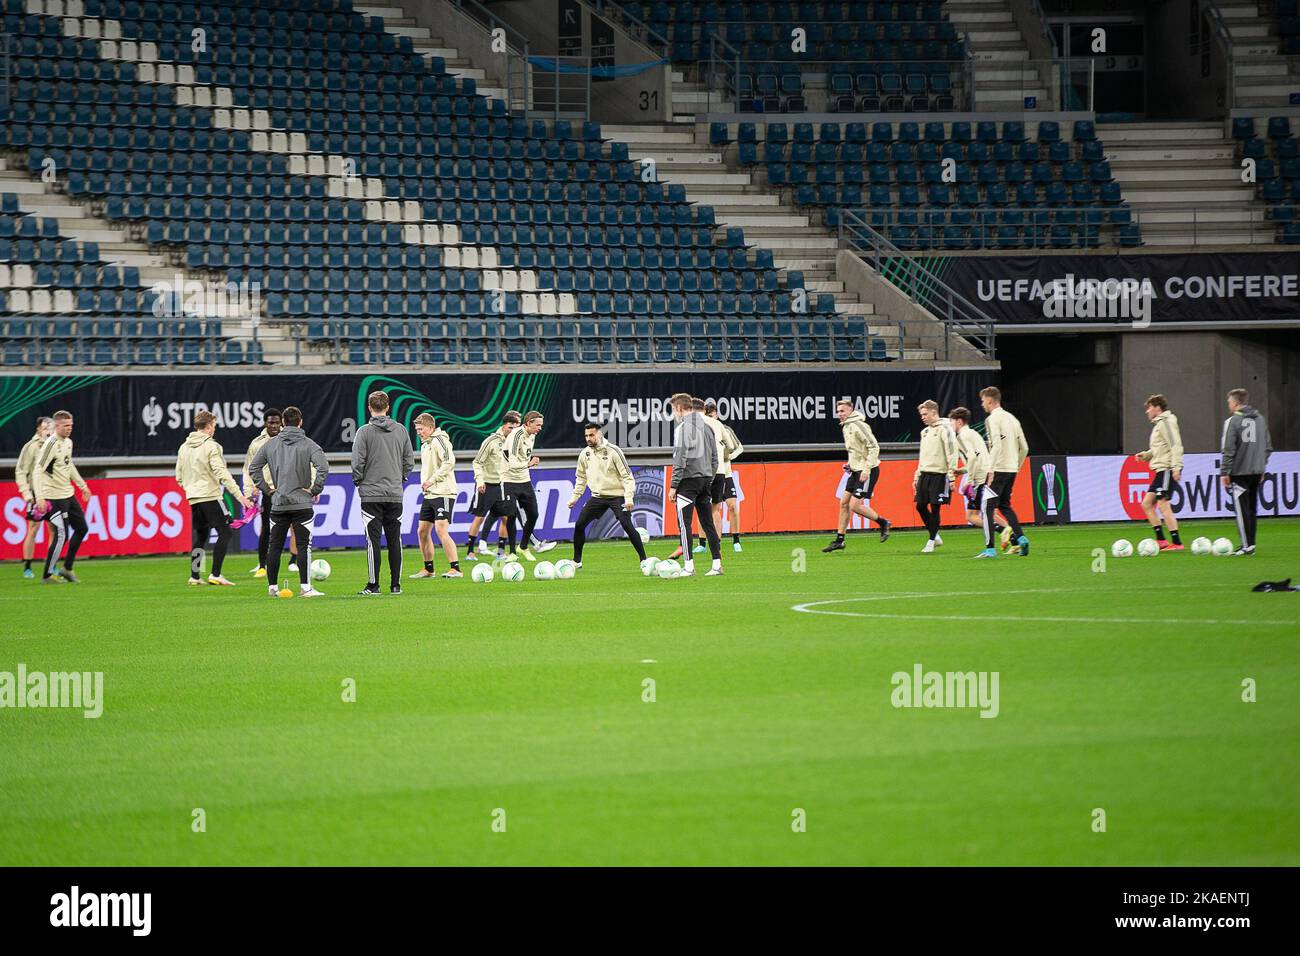 L'immagine mostra una sessione di allenamento della squadra norvegese Molde FK, mercoledì 02 novembre 2022 a Gand, in preparazione della partita di domani contro la squadra di calcio belga KAA Gand, il giorno 6/6 della tappa di gruppo della UEFA Europa Conference League. FOTO DI BELGA JAMES ARTHUR GEKIERE Foto Stock